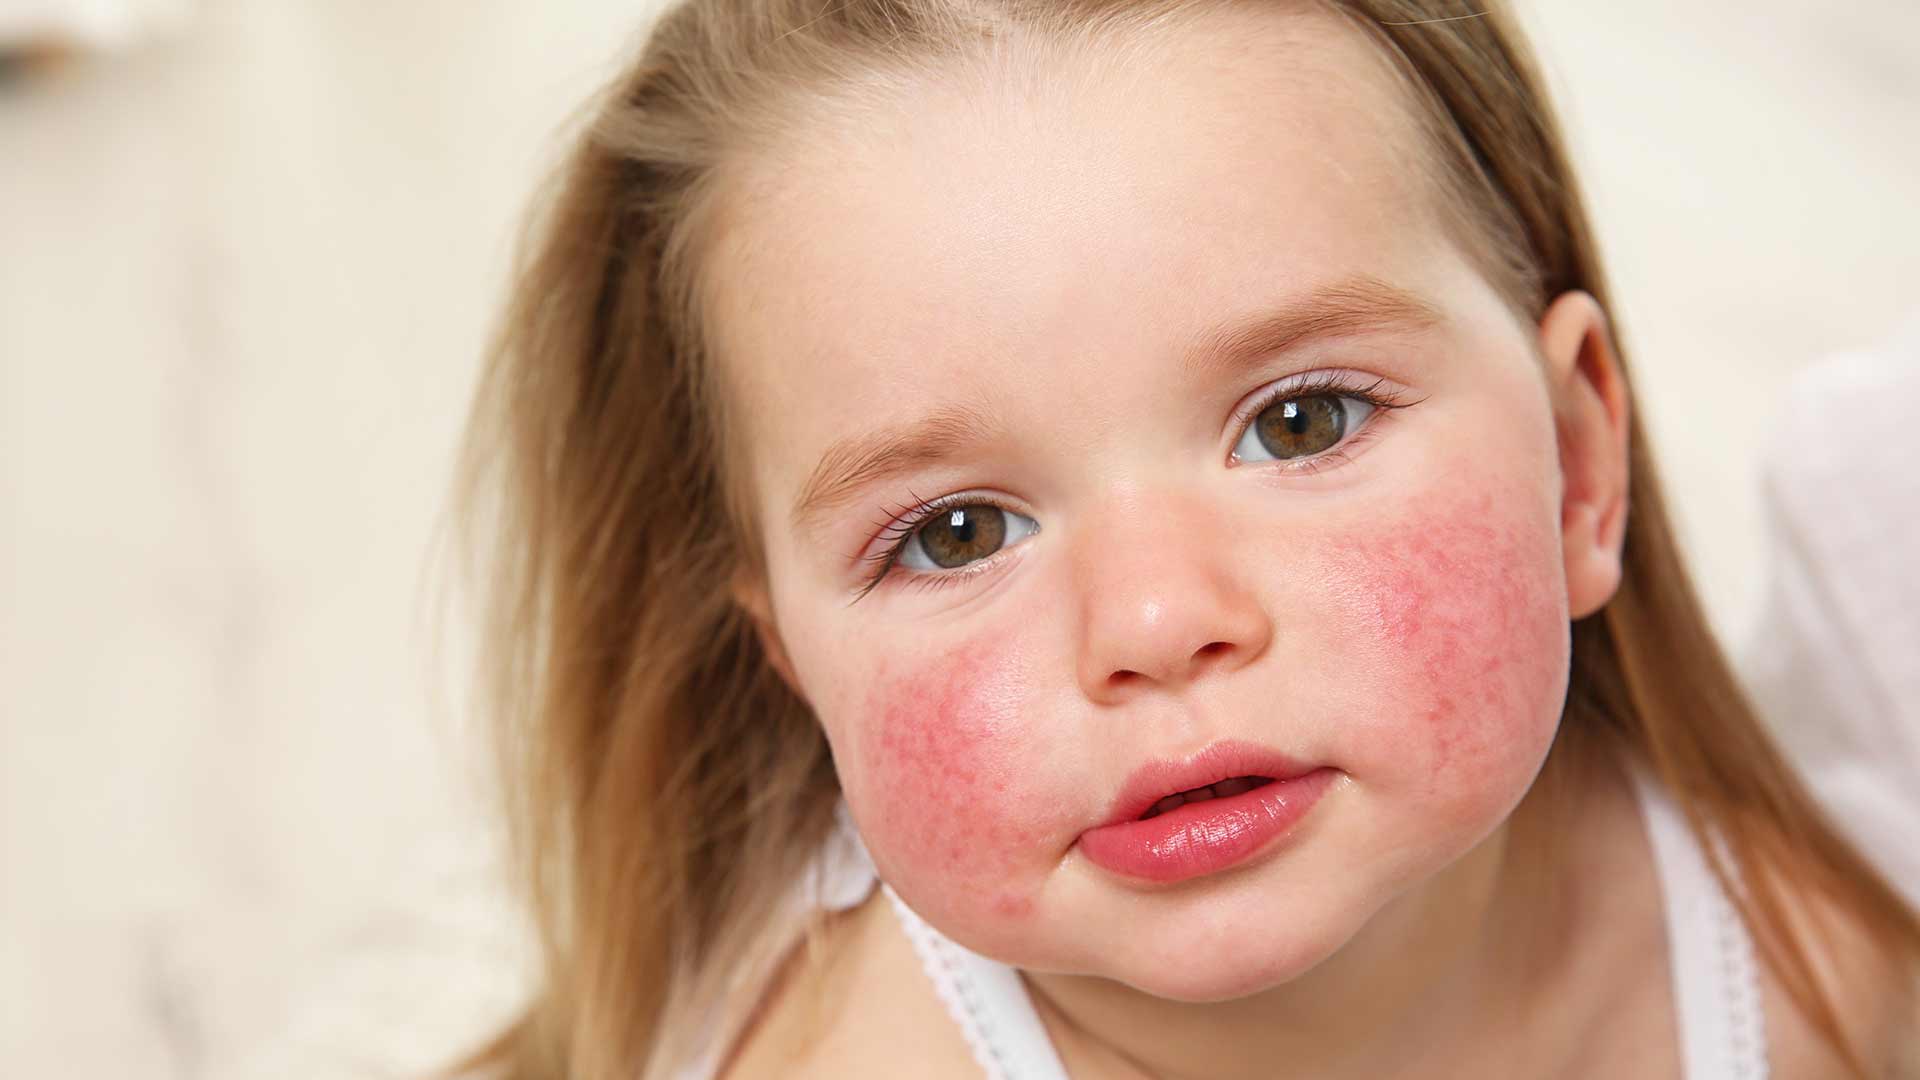 Jusqu’à 20% des enfants espagnols souffrent de dermatite atopique – Santé et Médecine